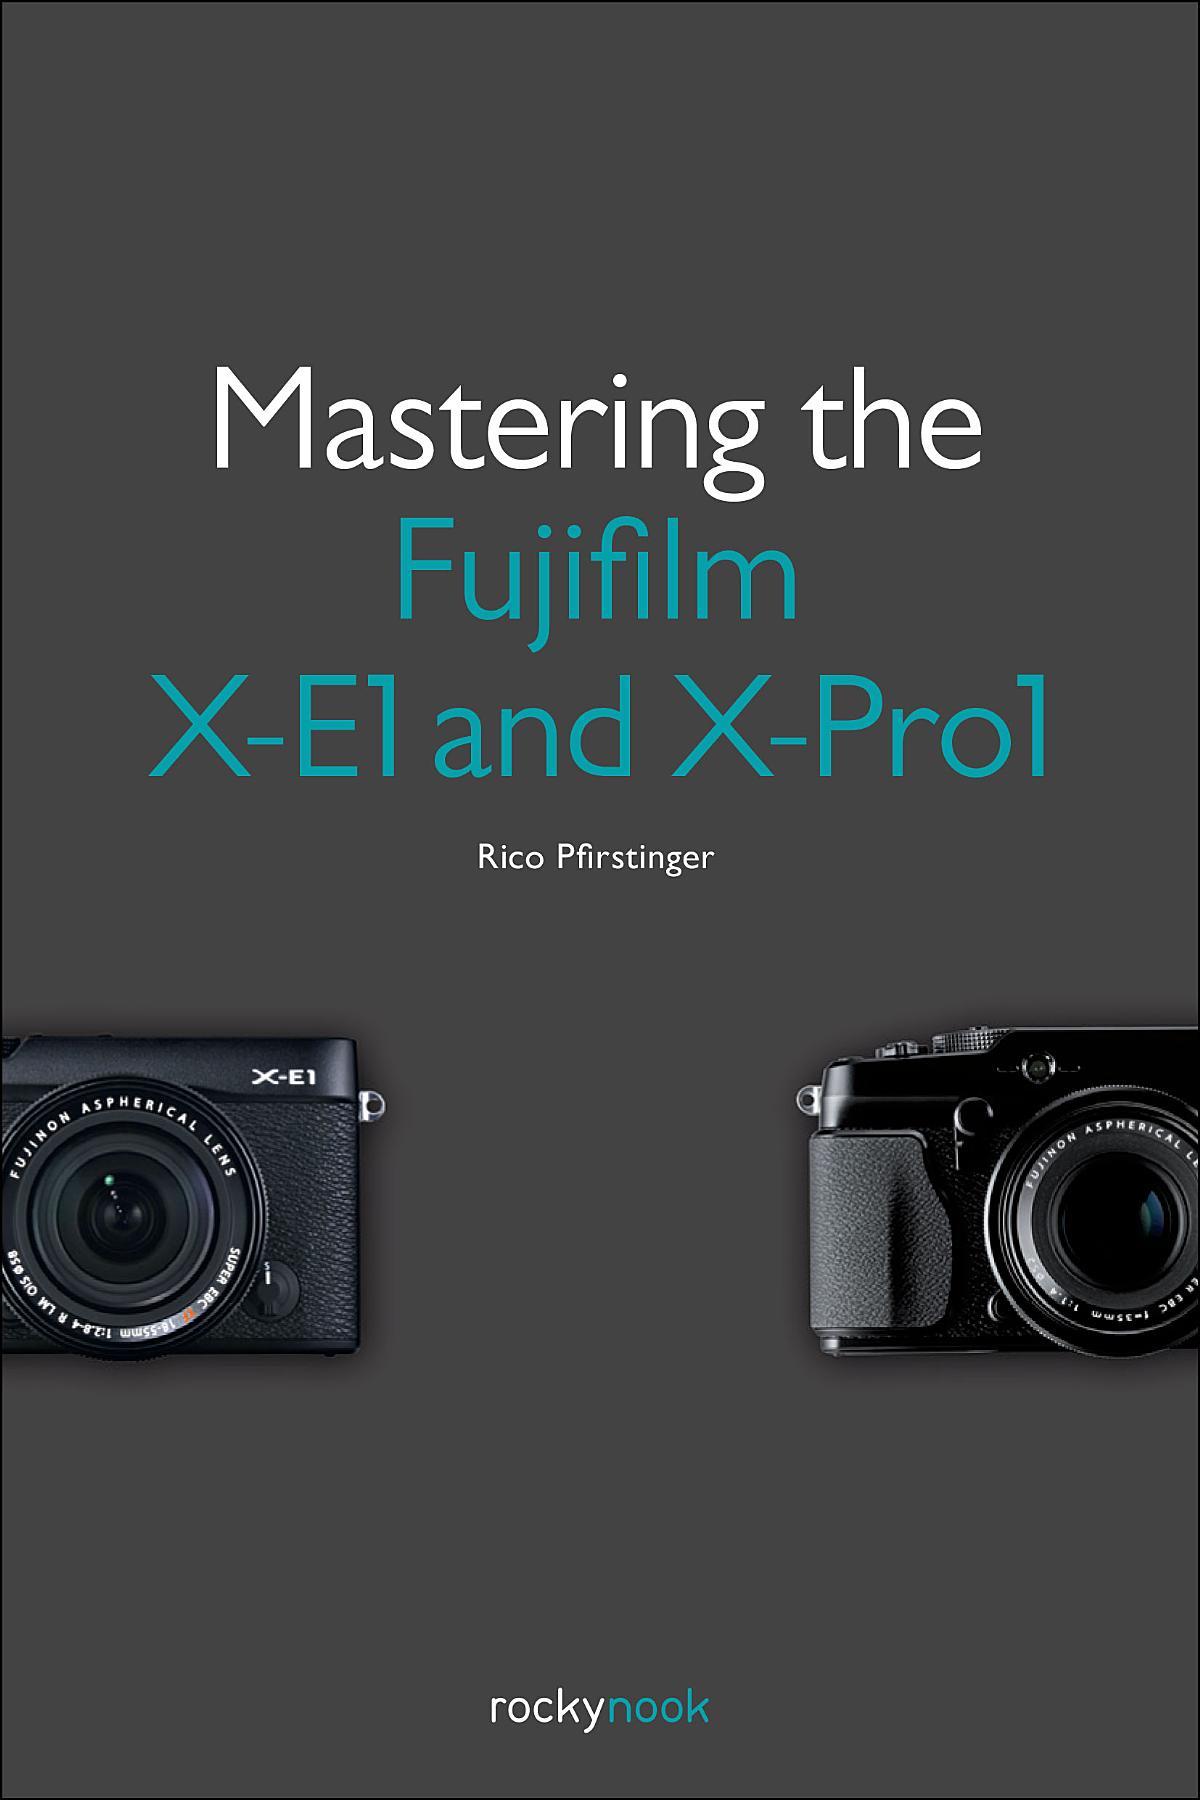 Mastering the Fujifilm X-E1 and X-Pro1 - RockyNook